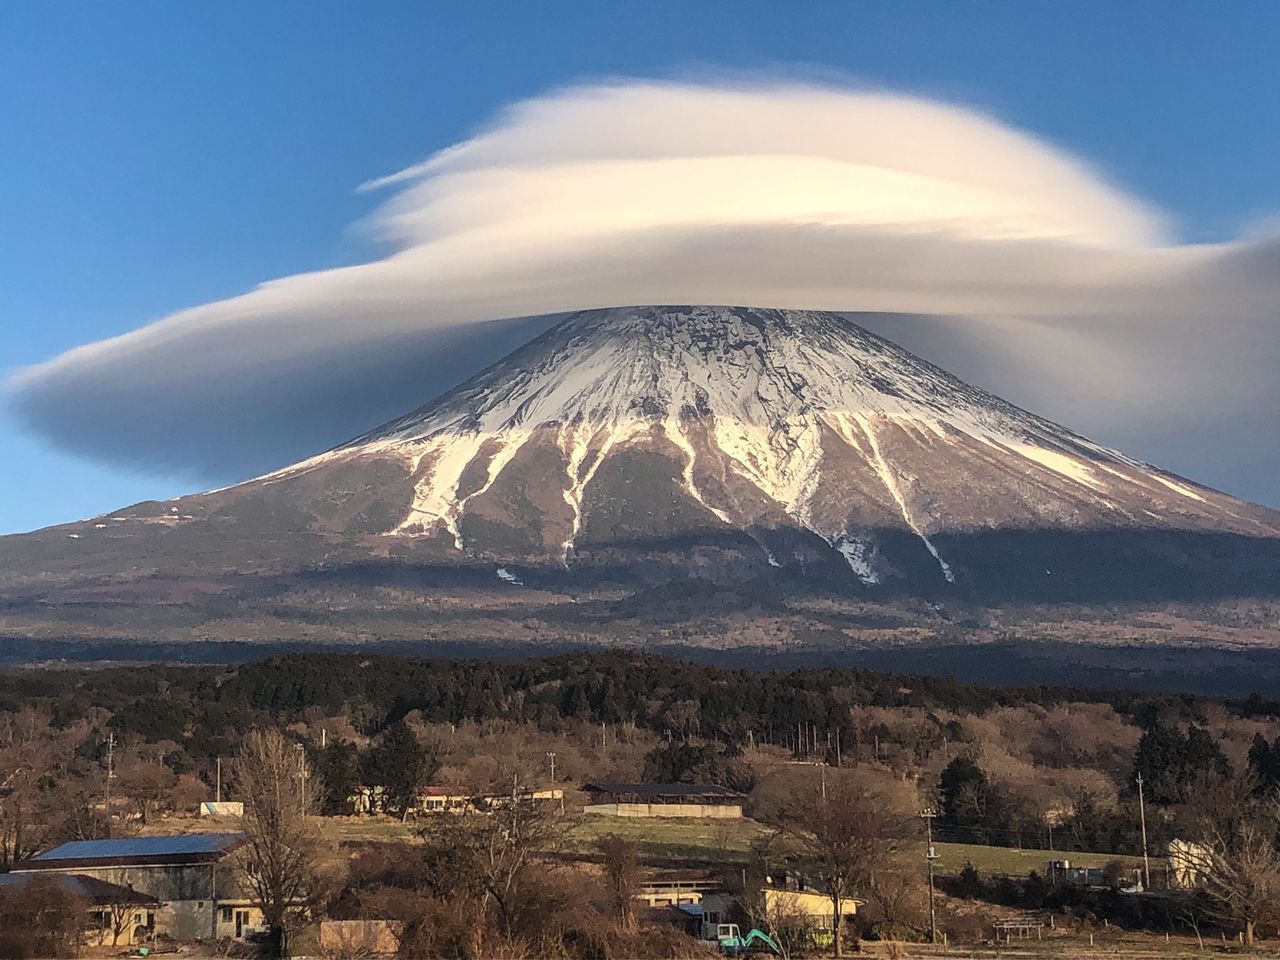 La fotografía del monte Fuji cubierto por una nube que parece un sombrero se hizo viral en redes sociales. Gracias al excelente ángulo desde donde fue tomada, en esta fotografía podemos apreciar incluso el interior de la enorme nube. (imagen de Hashimuki Makoto)